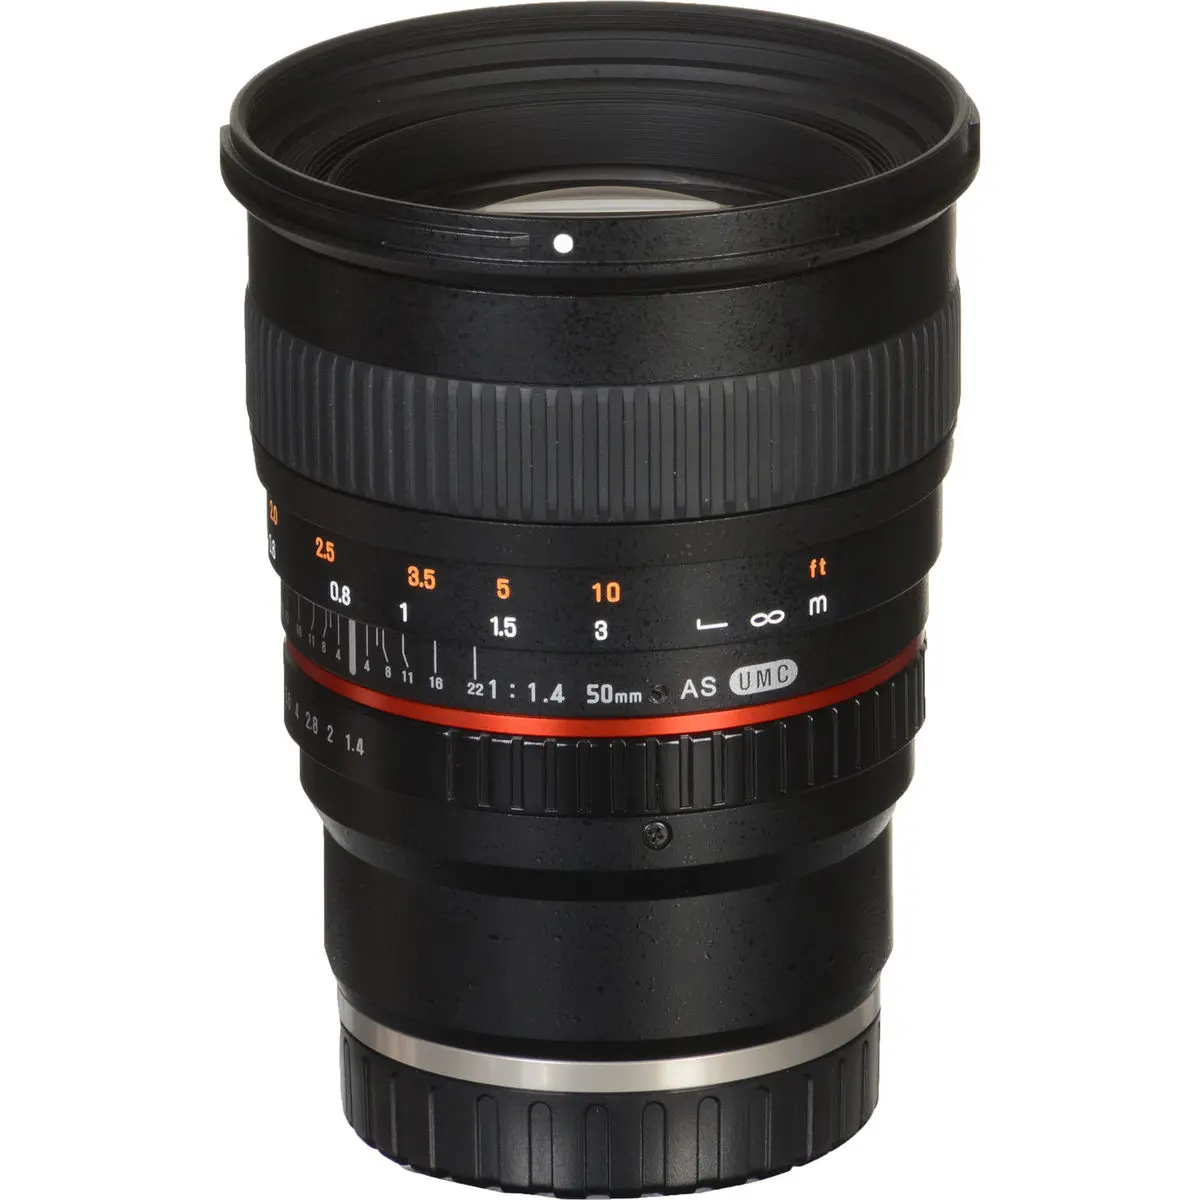 11. Samyang 50 mm f/1.4 AS UMC (Sony E) Lens